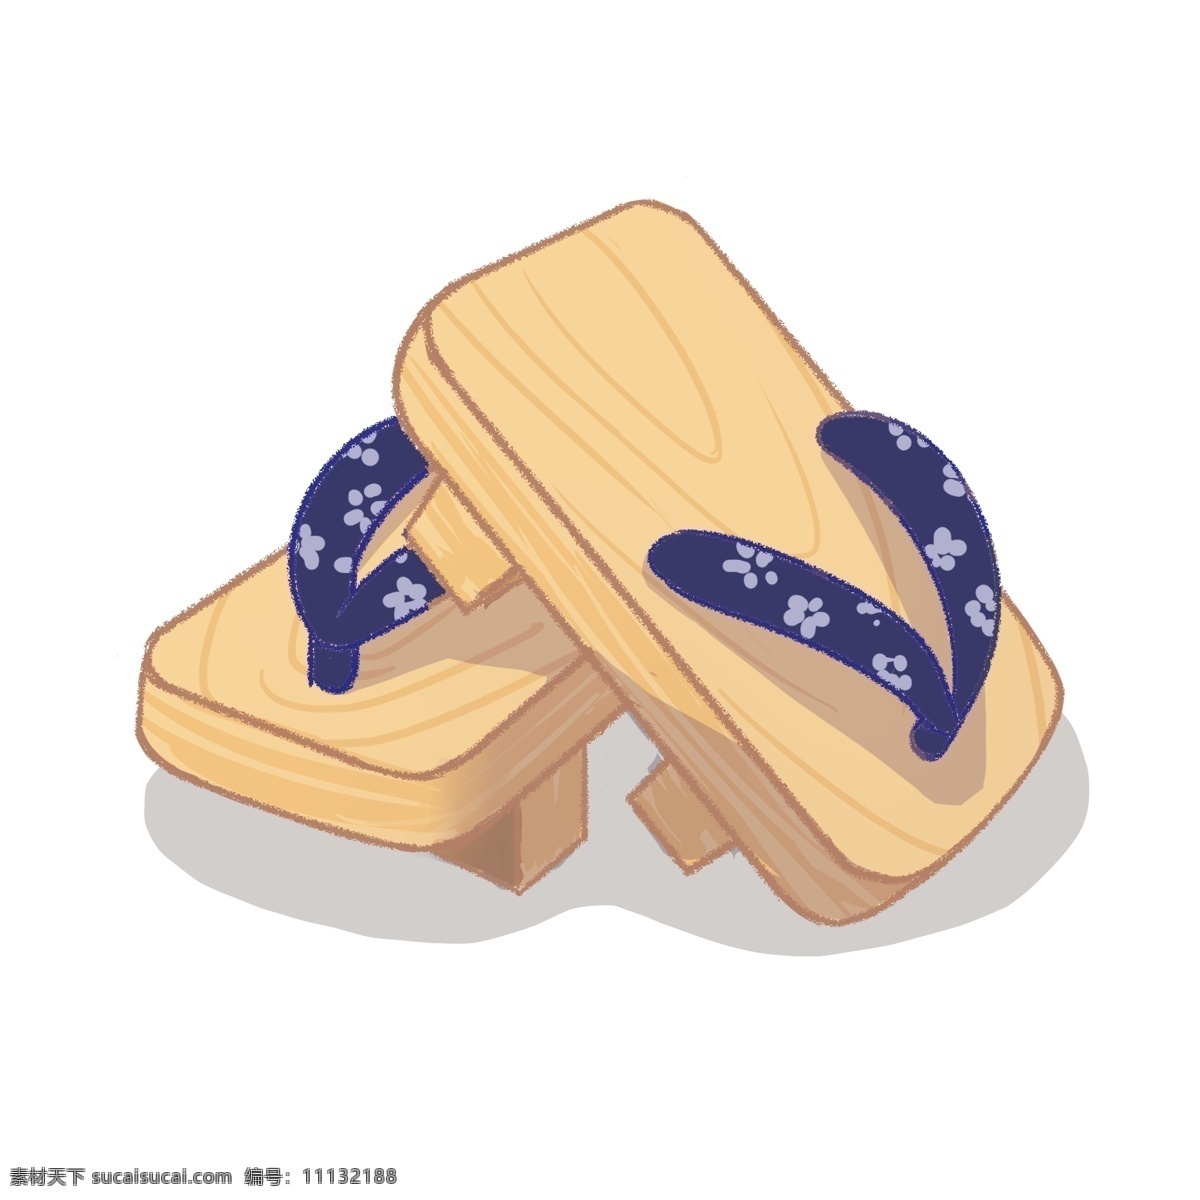 日本 特色 木屐 鞋子 插画 木屐的鞋子 卡通插画 日本插画 日本小物 日本产品 日本风情 蓝色的带子